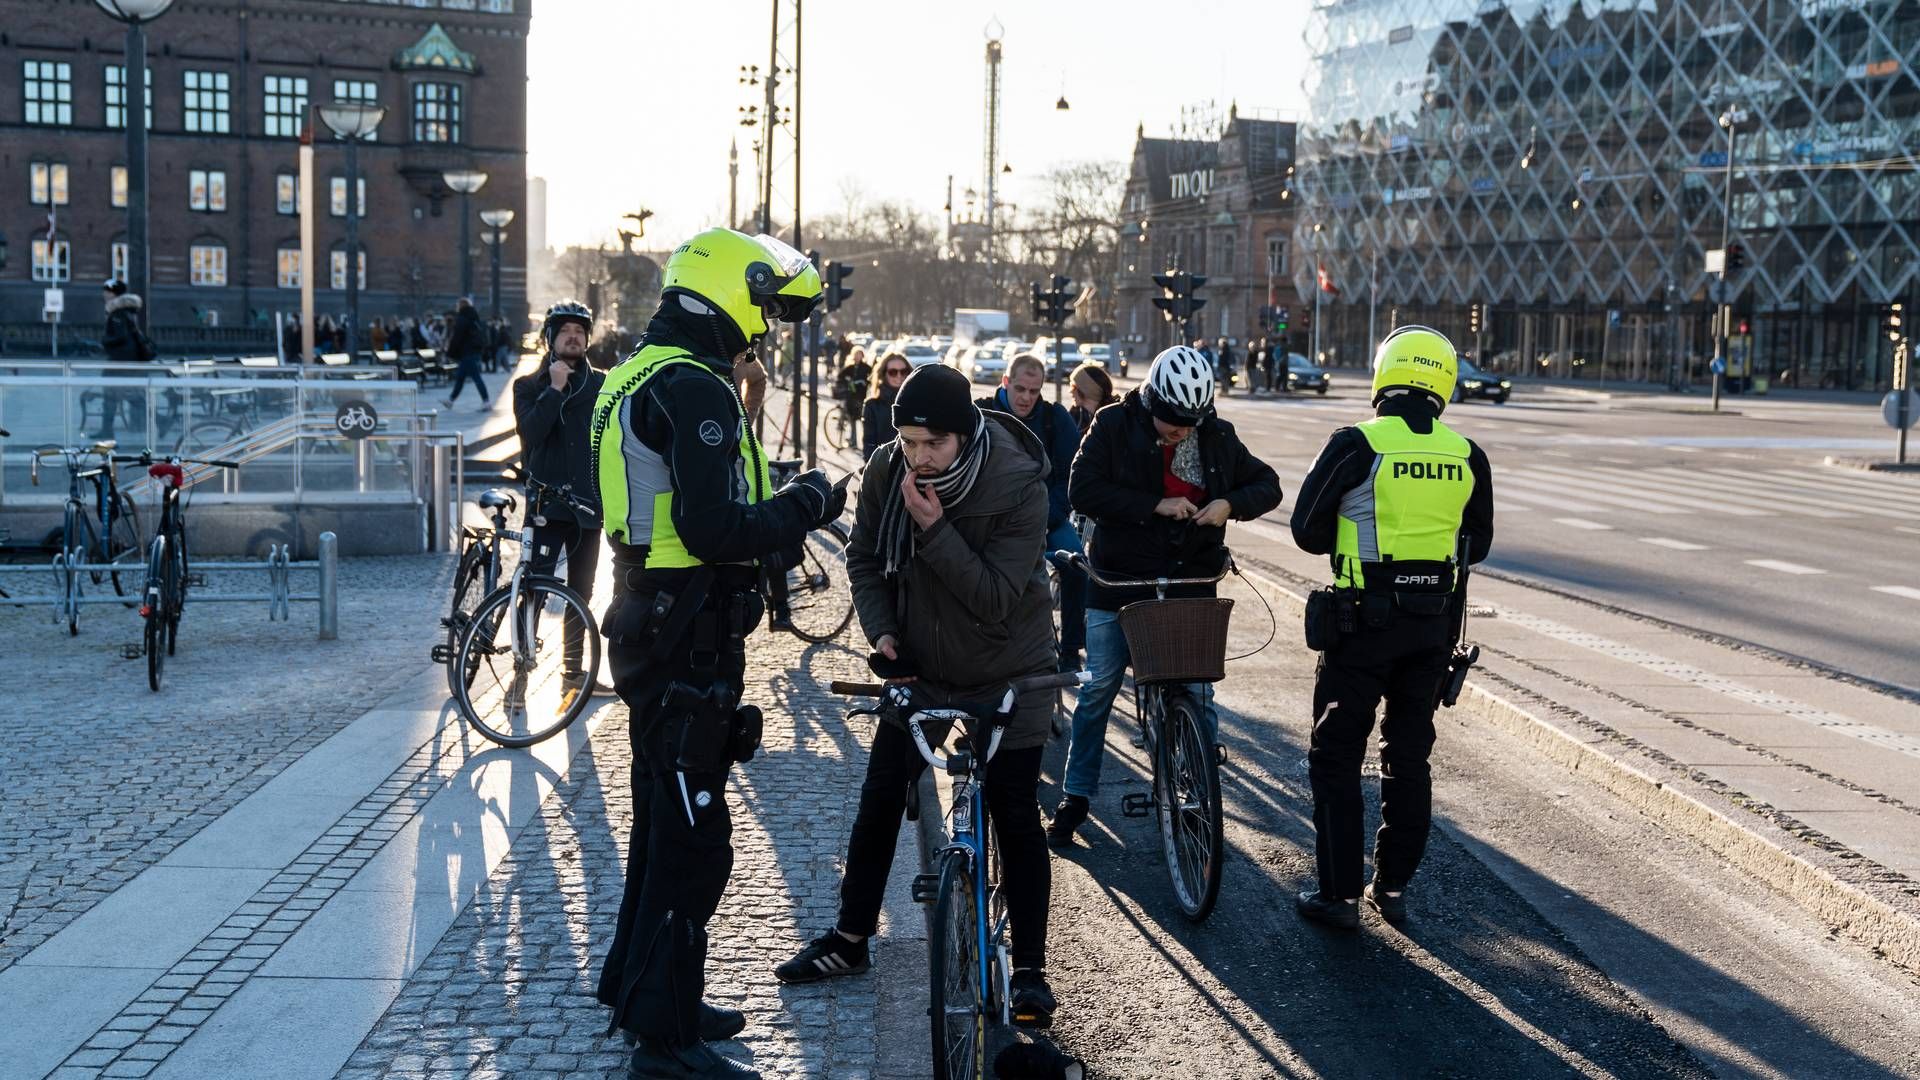 Nyt formandskab er udpeget til at stå i spidsen for kommission med fokus på trafiksikkerhed. | Foto: Aleksander Klug/Ritzau Scanpix